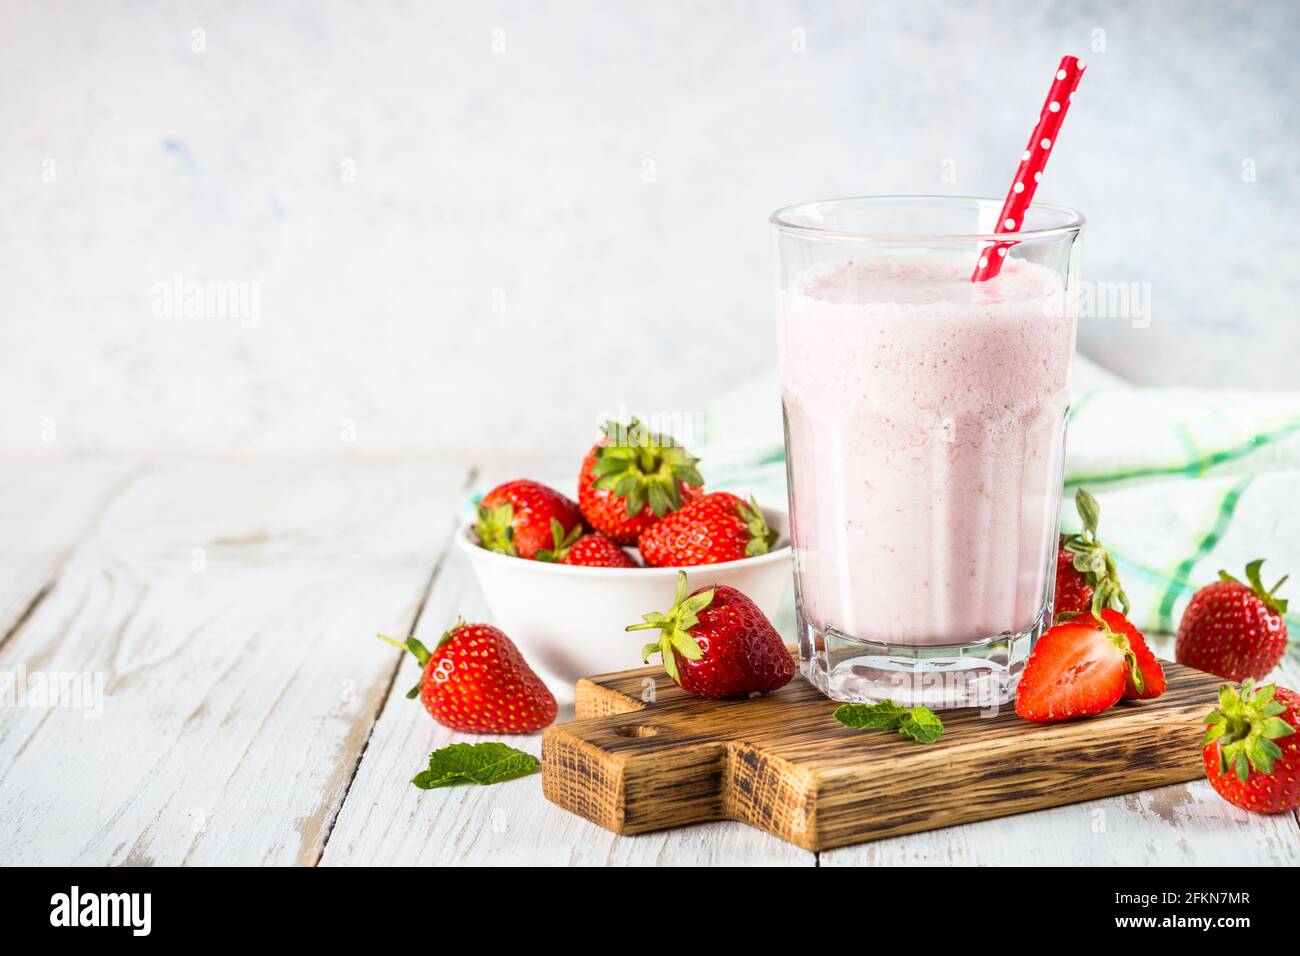 Erdbeer-Smoothie oder Milchshake am weißen Tisch. Stockfoto